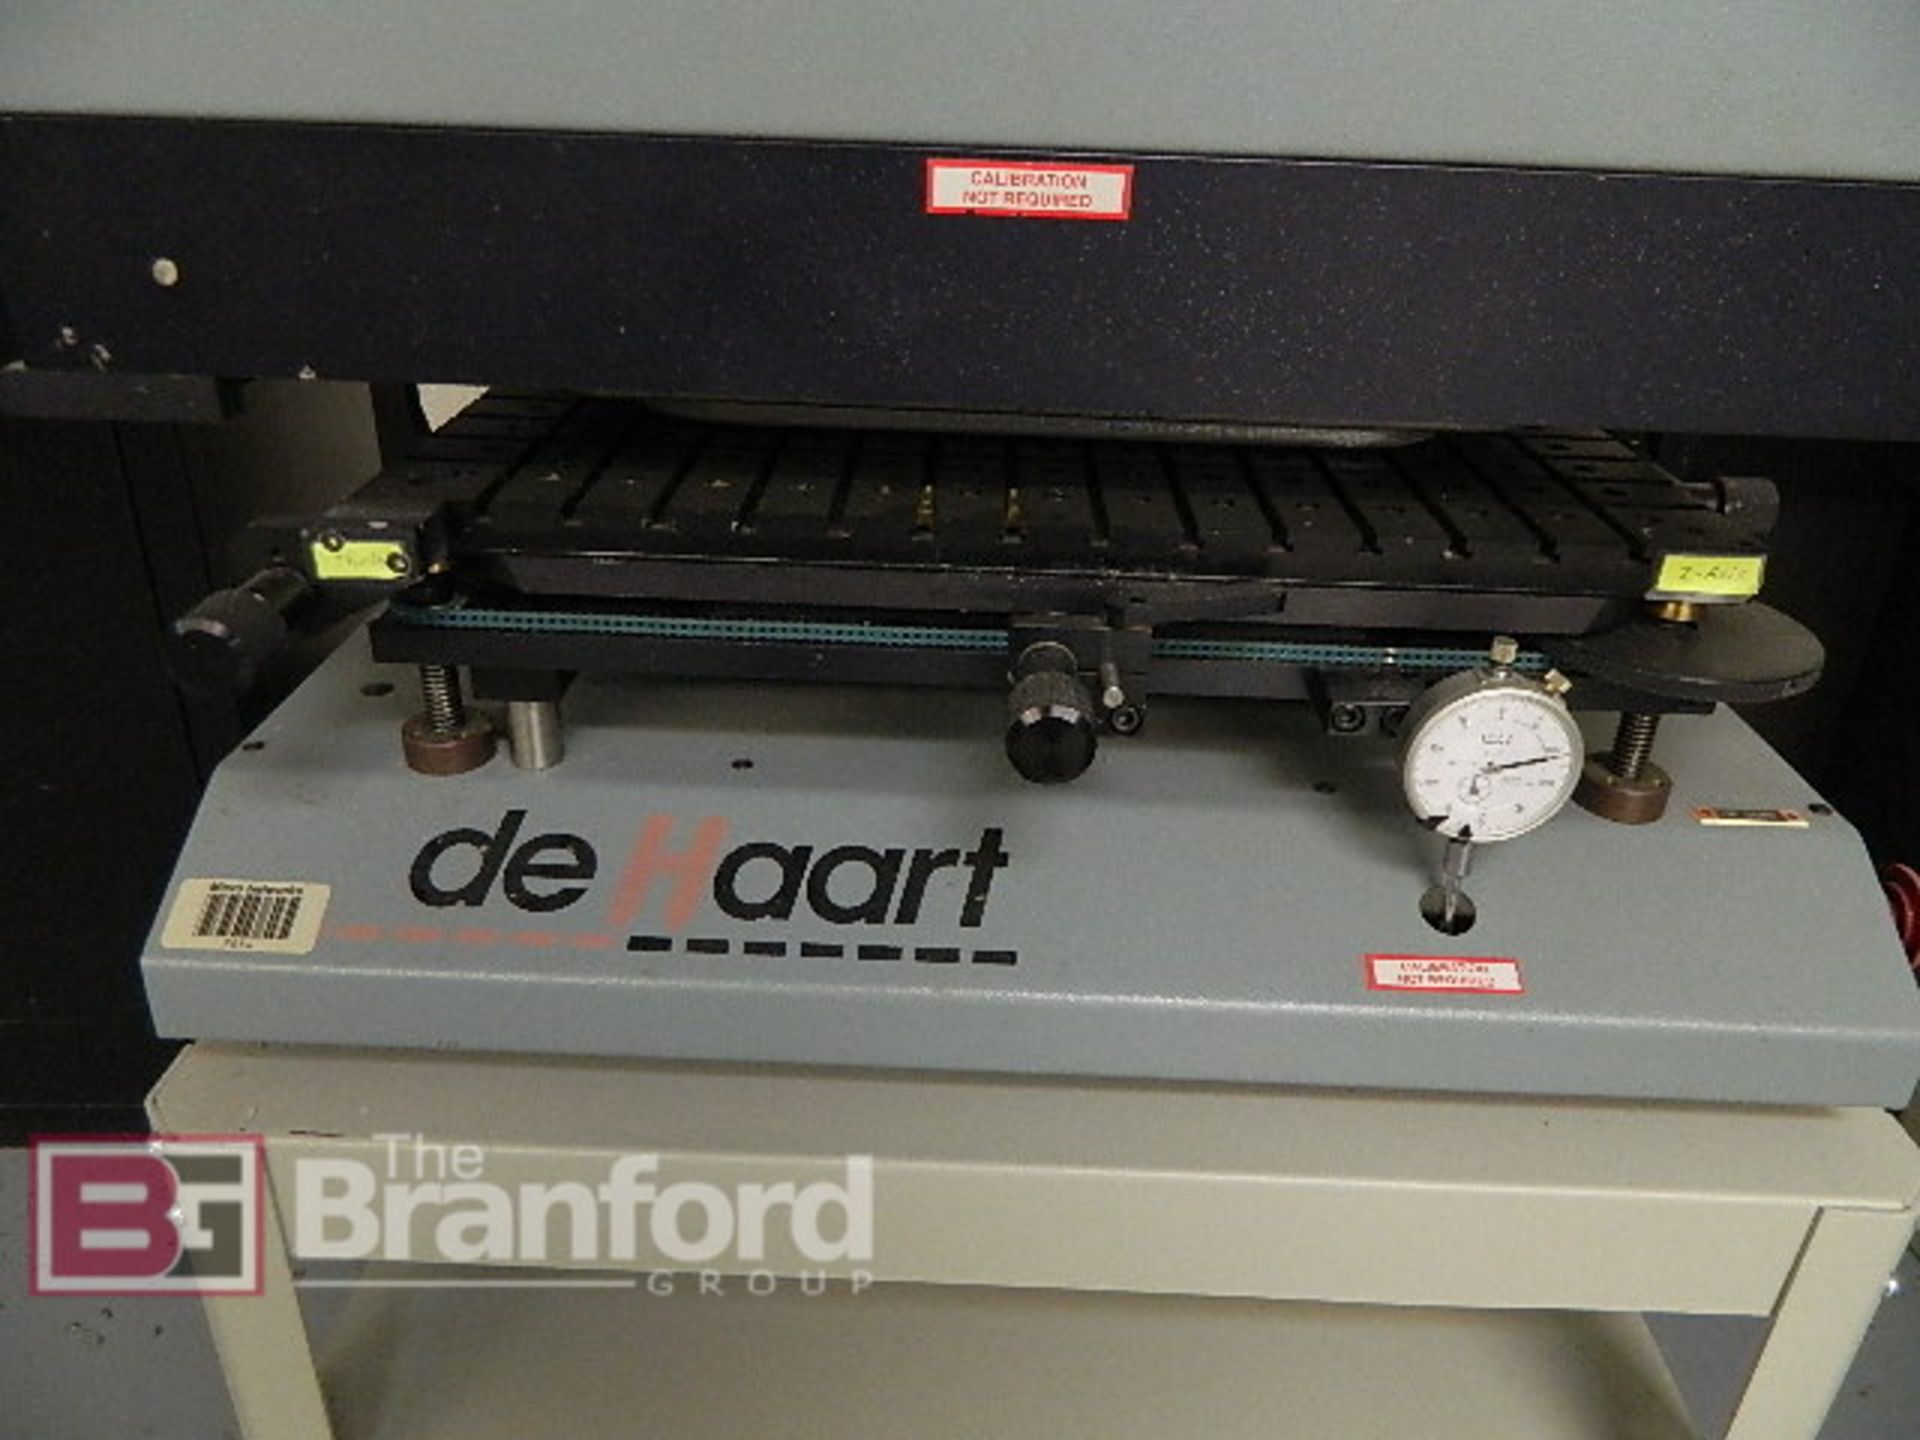 Dehaart Screen Printer, m/n EL-20 - Image 3 of 4